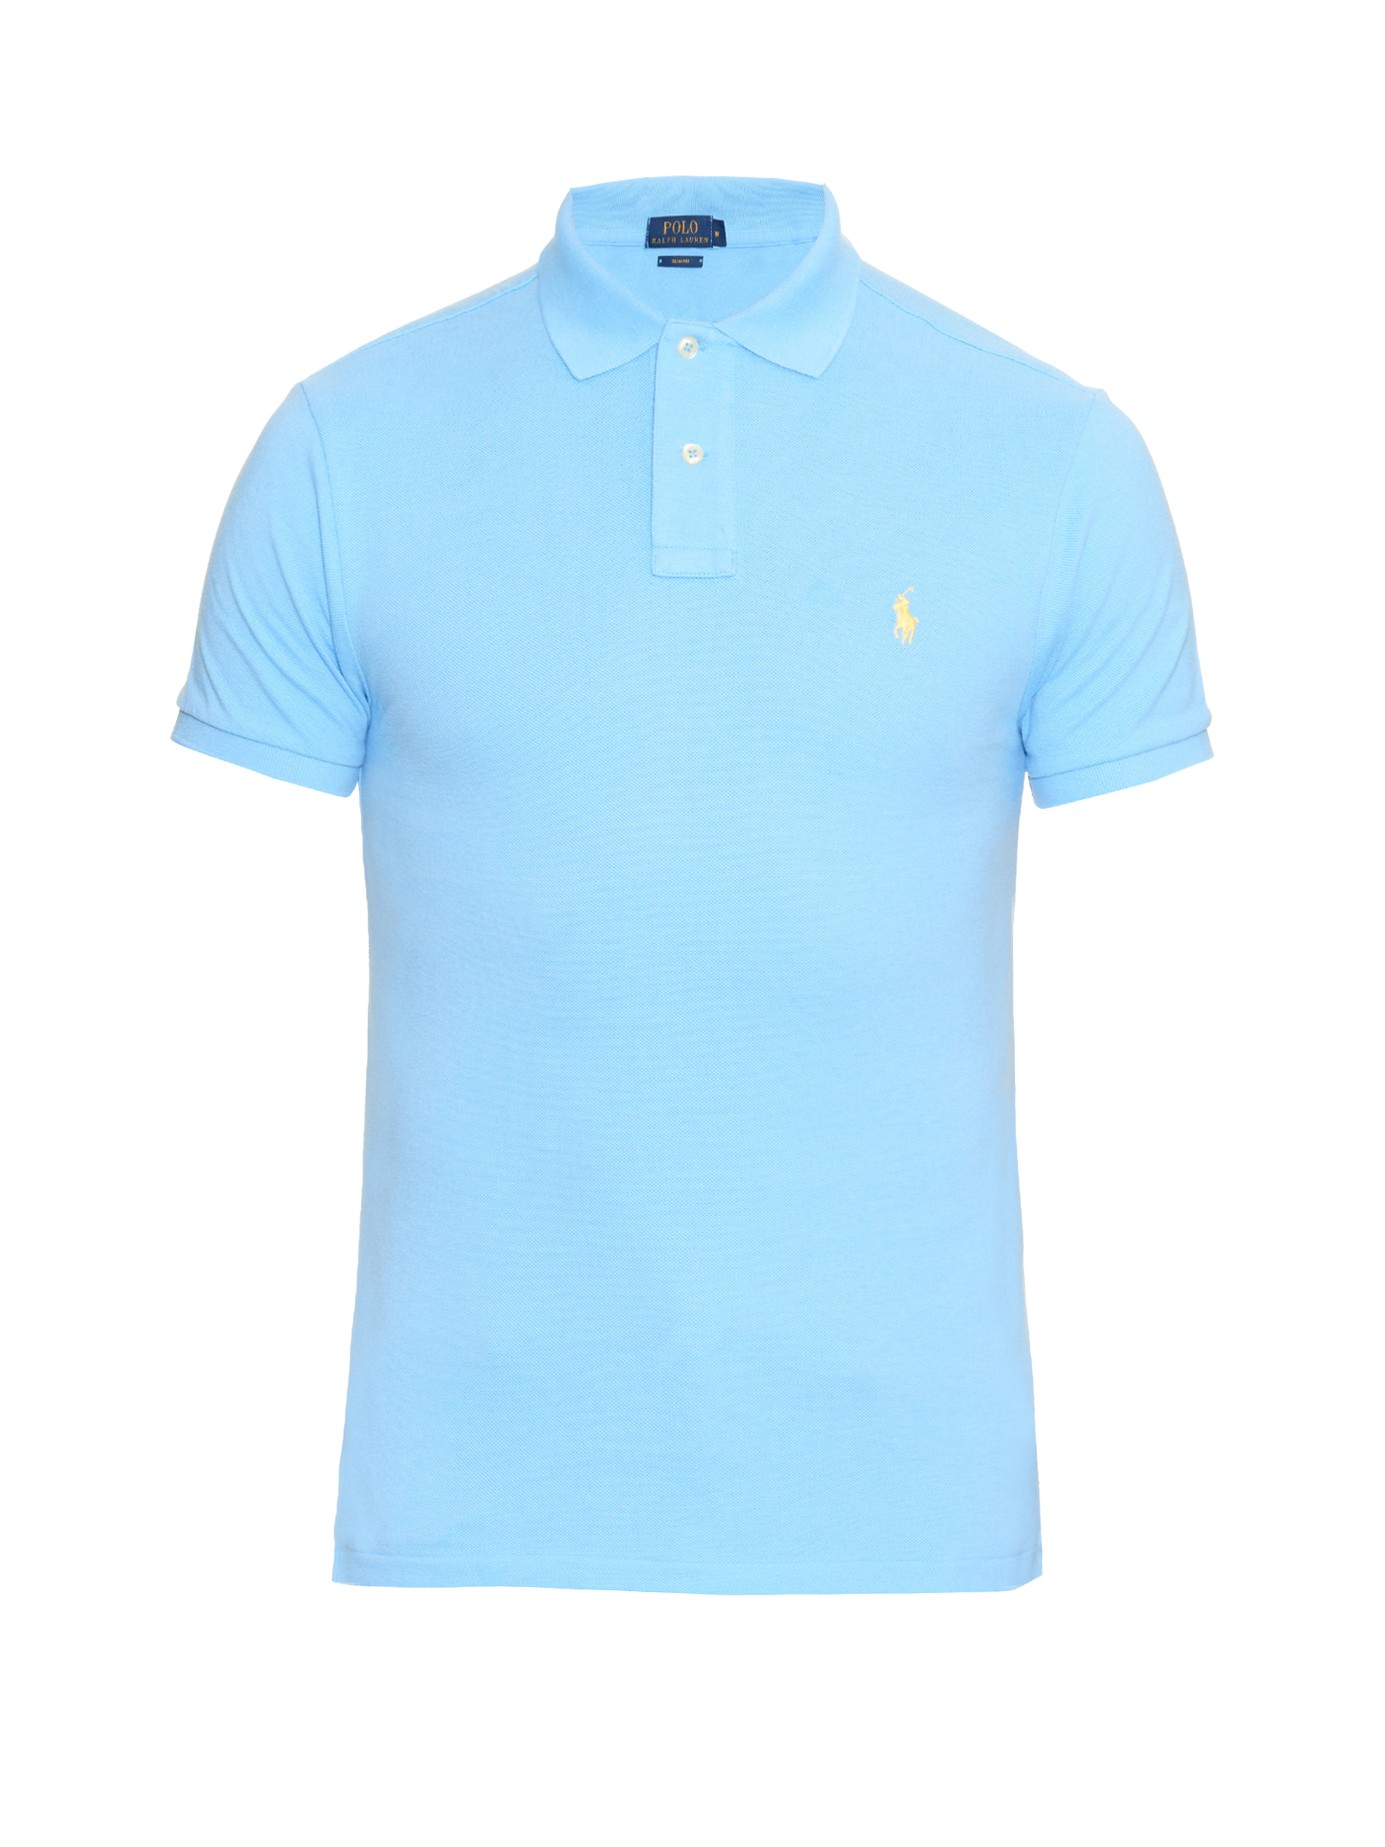 Lyst - Polo Ralph Lauren Slim-fit Cotton-piqué Polo Shirt in Blue for Men